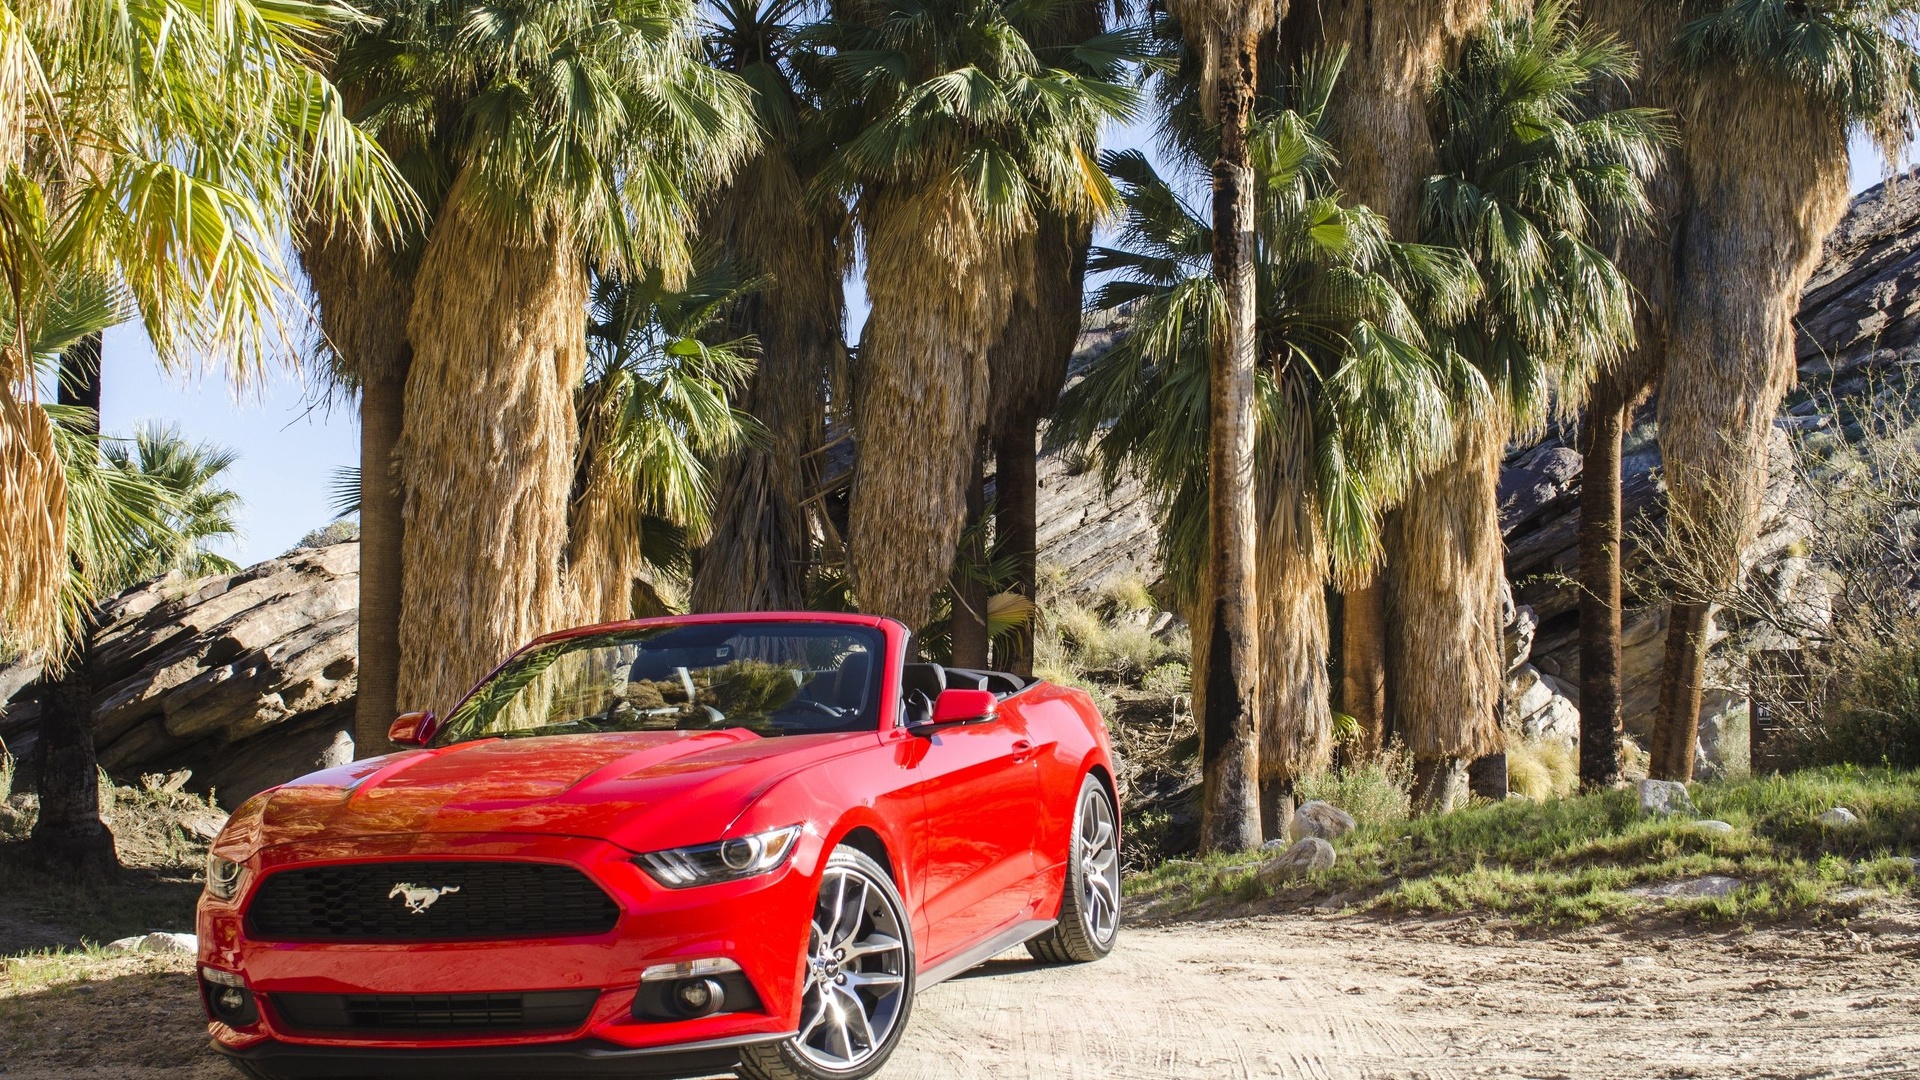 Ford Mustang - fond d'écran.jpg